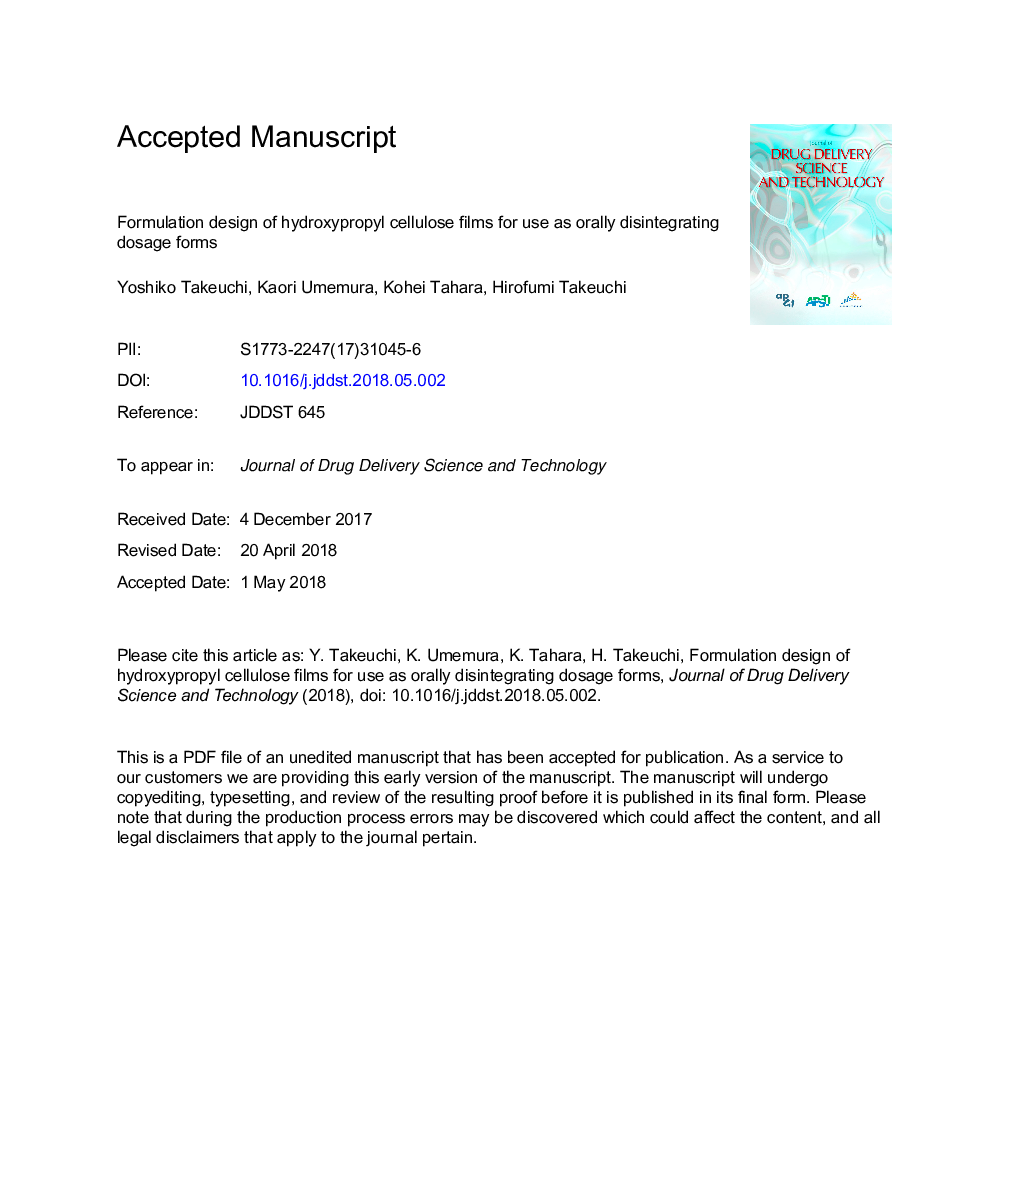 طراحی فرمولاسیون از فیلم های هیدروکسی پروپیل سلولز برای استفاده به عنوان فرمول های دوز خوراکی 